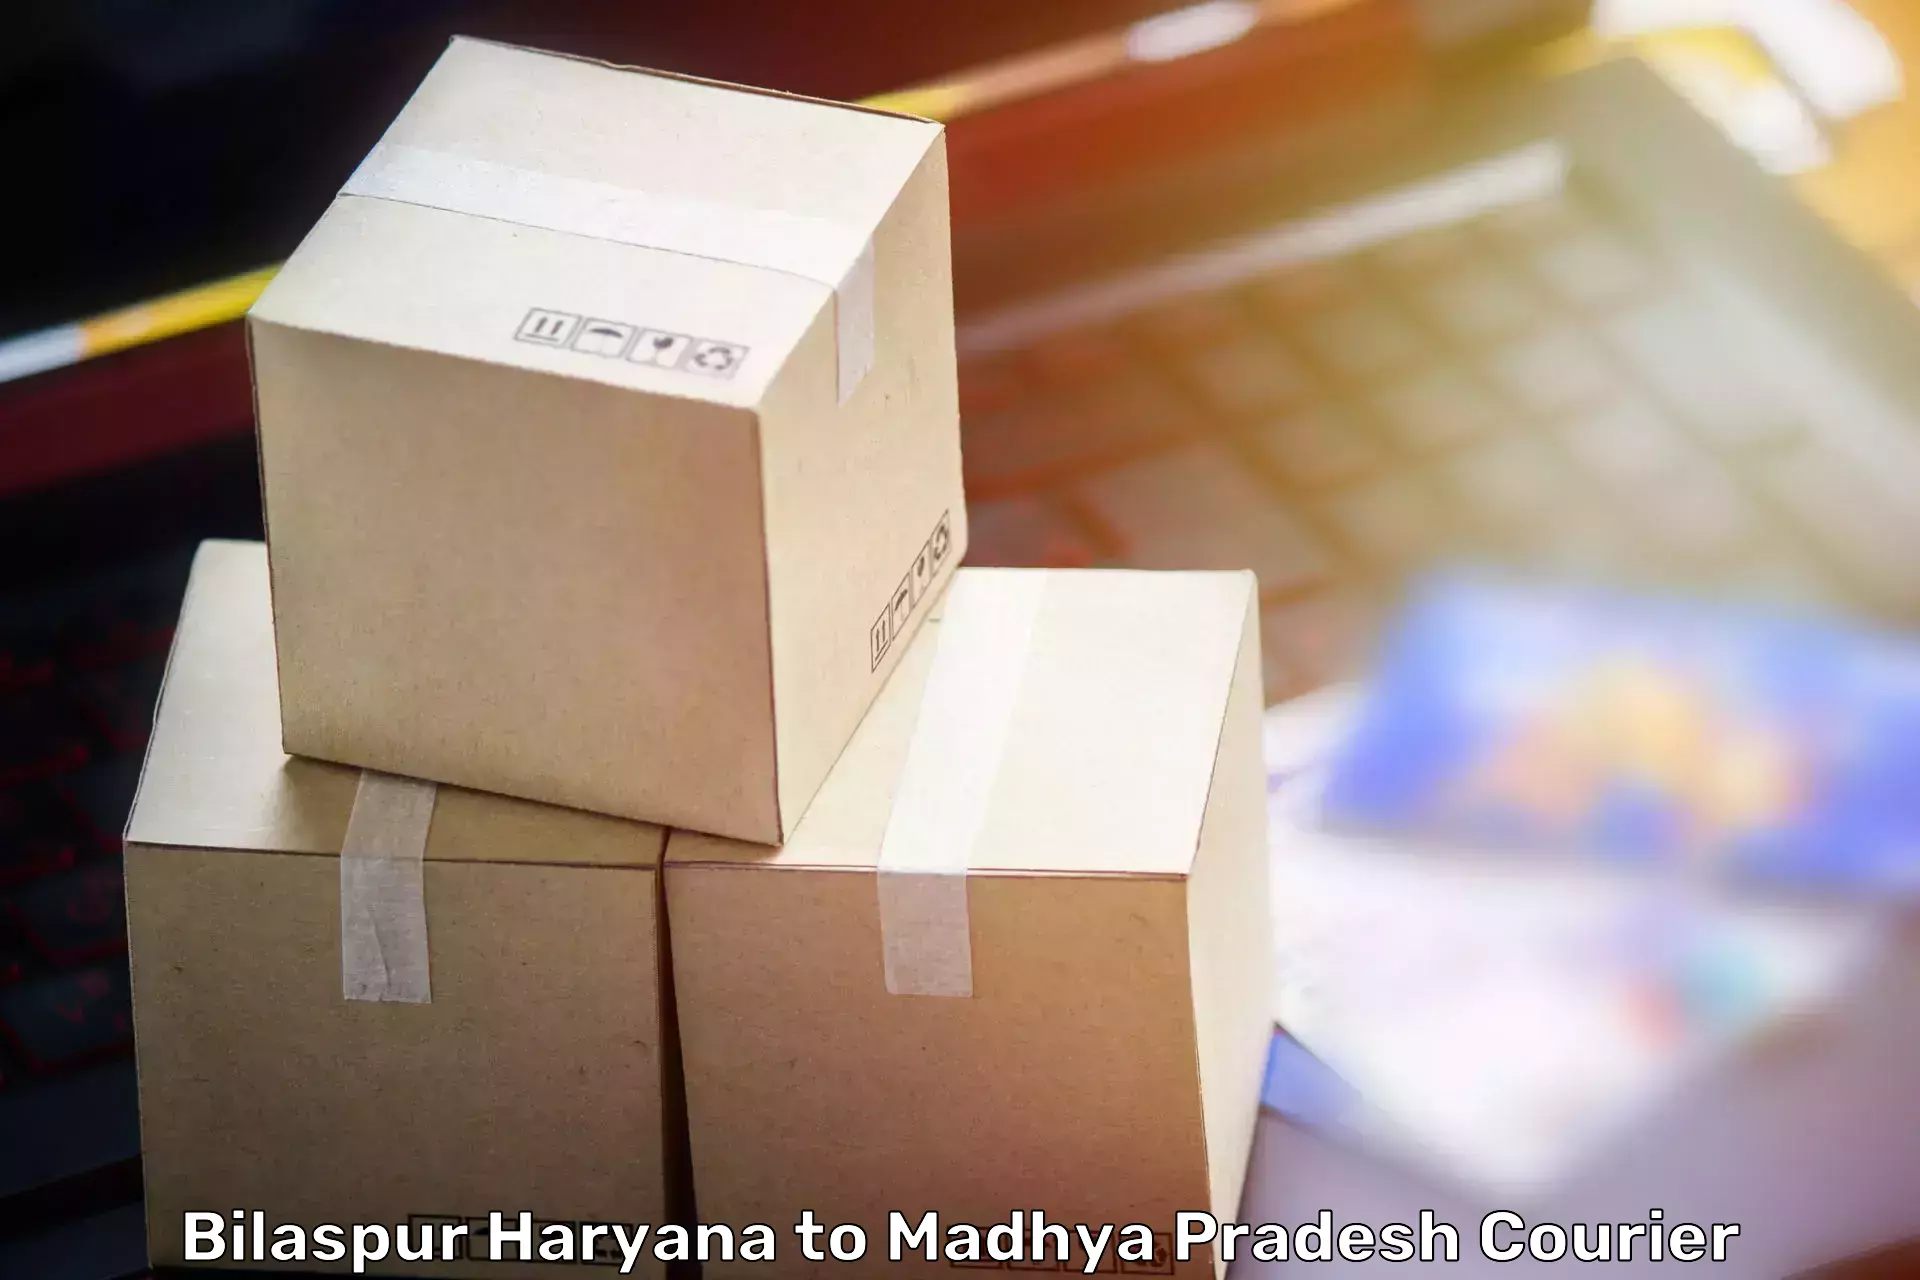 Furniture transport services Bilaspur Haryana to Dewas